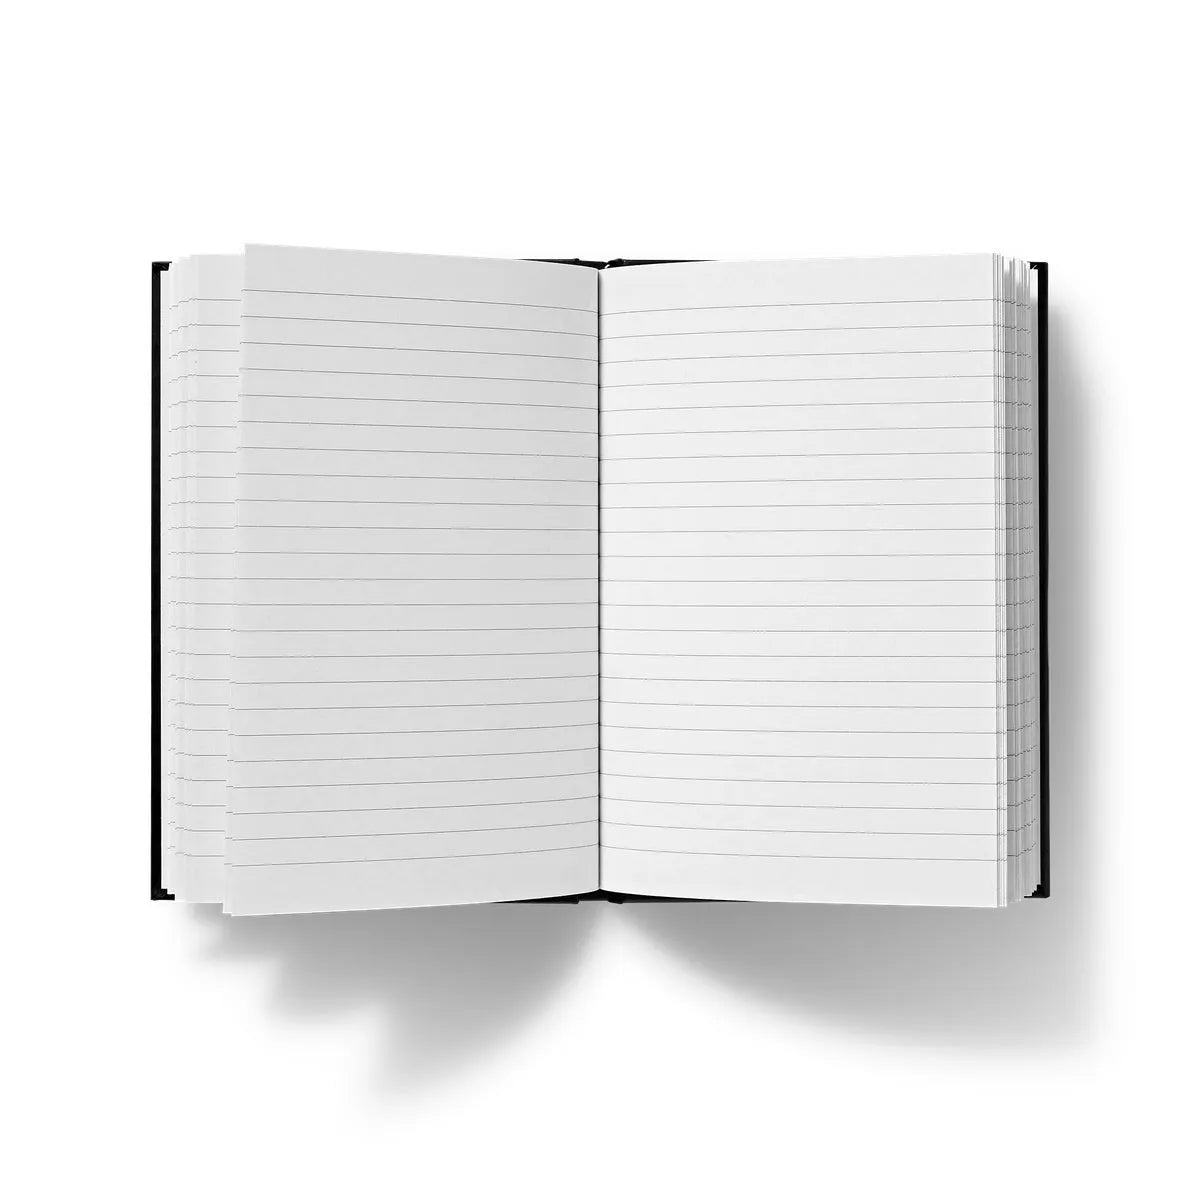 Divine Order Hardback Journal - Notebooks & Notepads - Aesthetic Art